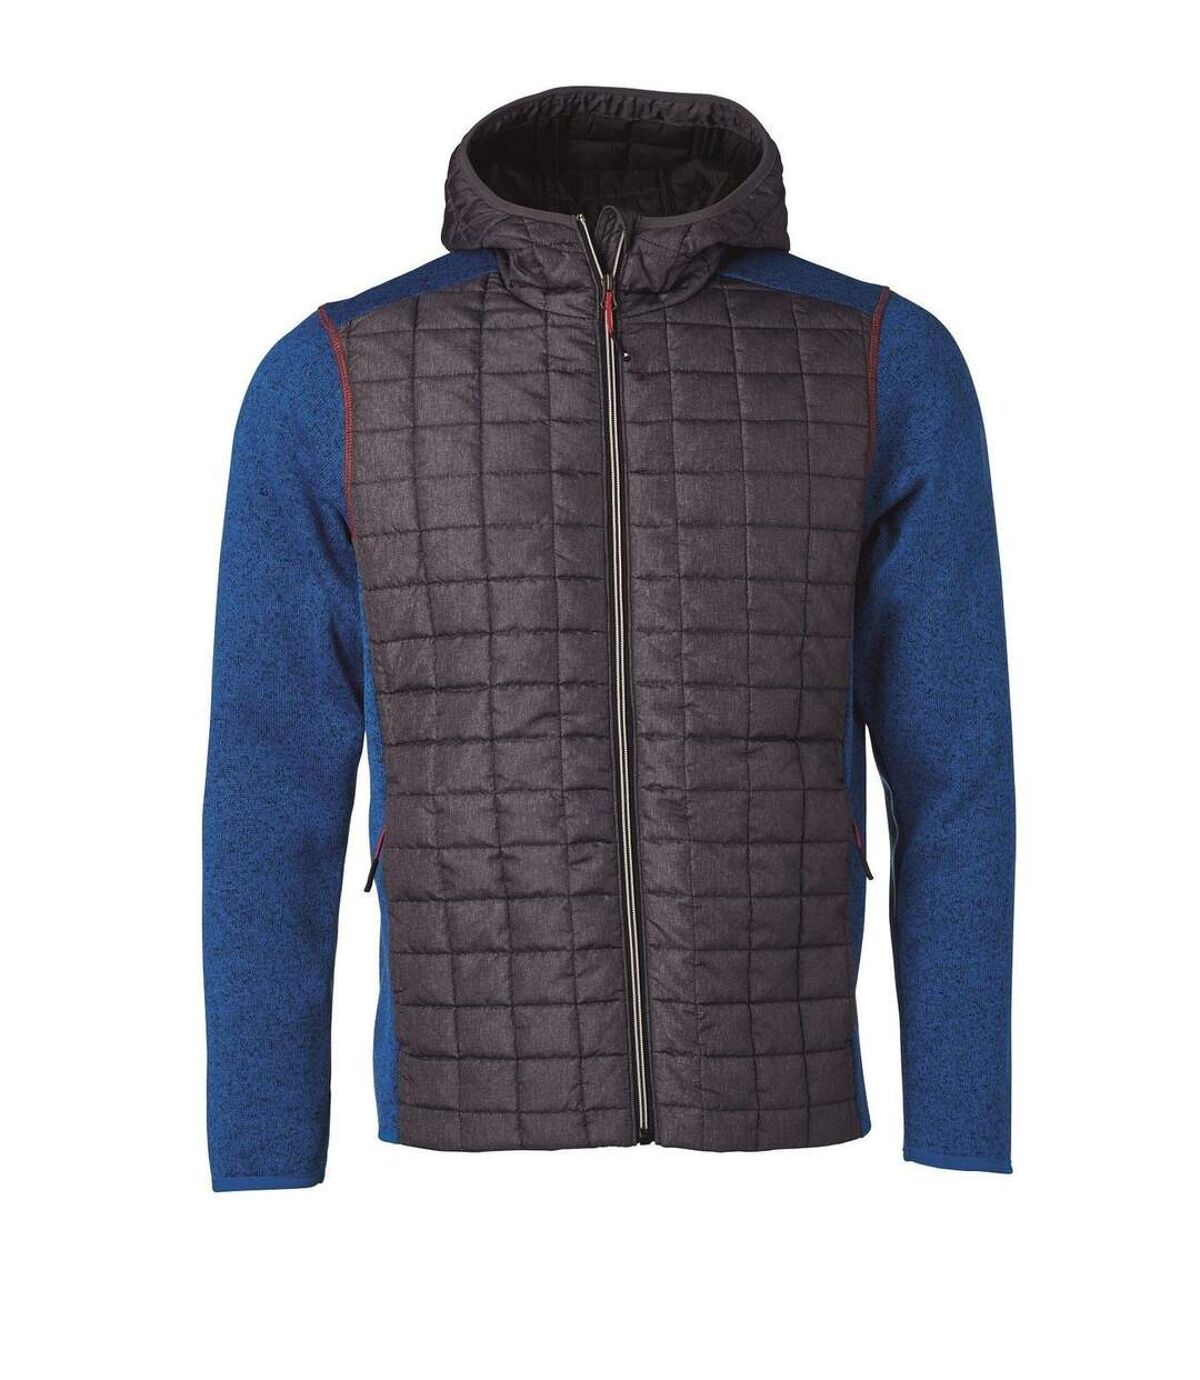 Veste tricot hybride matelassée - homme - JN772 - gris foncé bleu roi